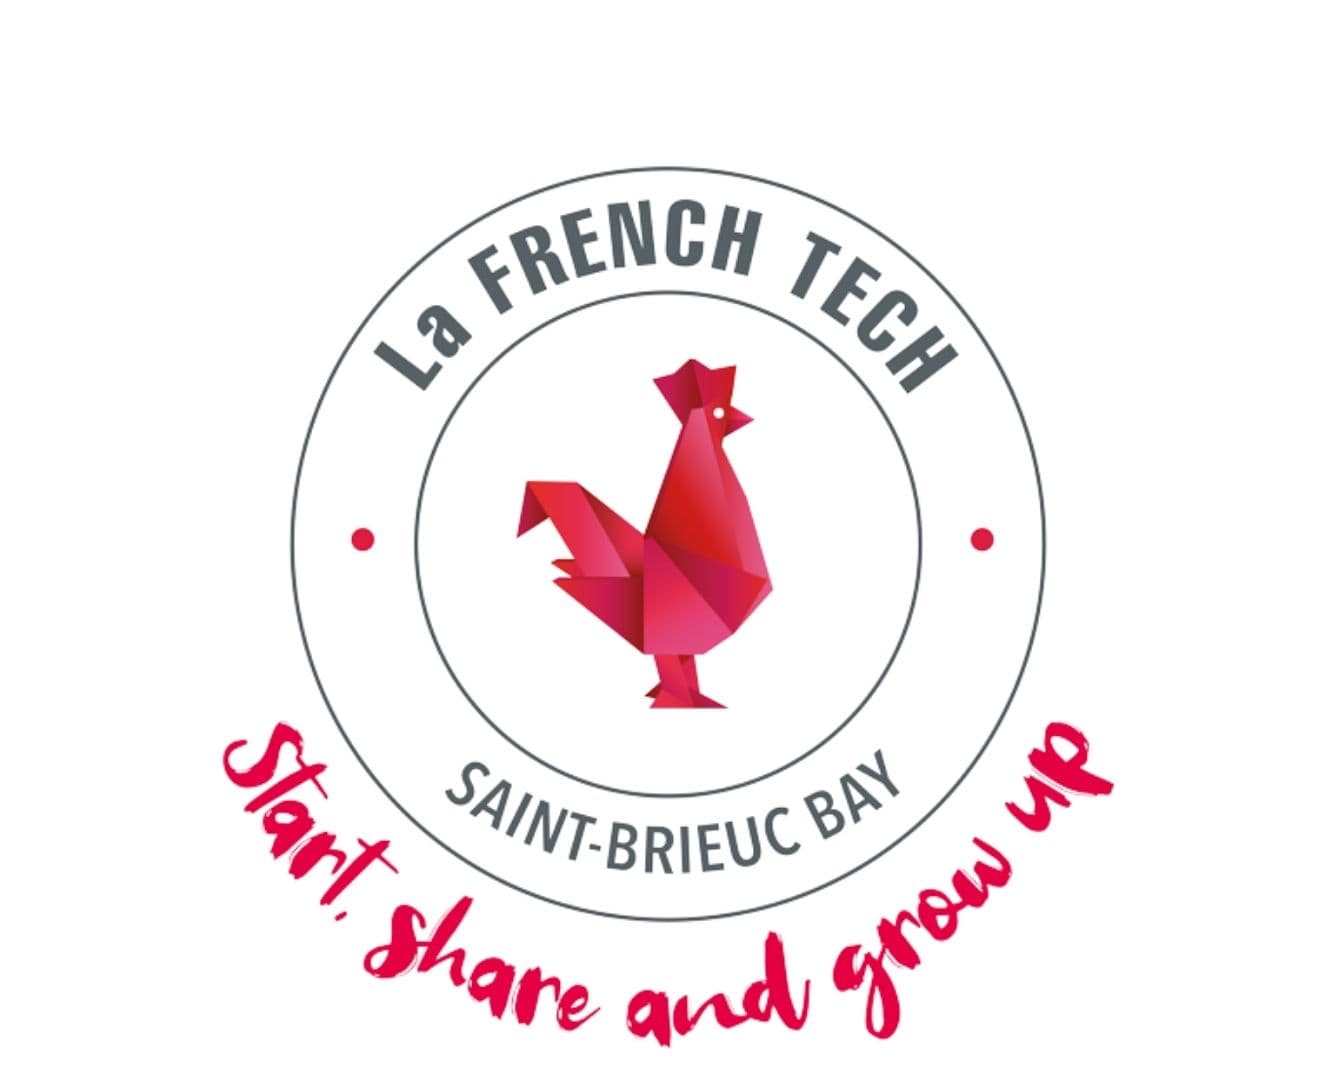 French_tech_saint-Brieuc_Bay